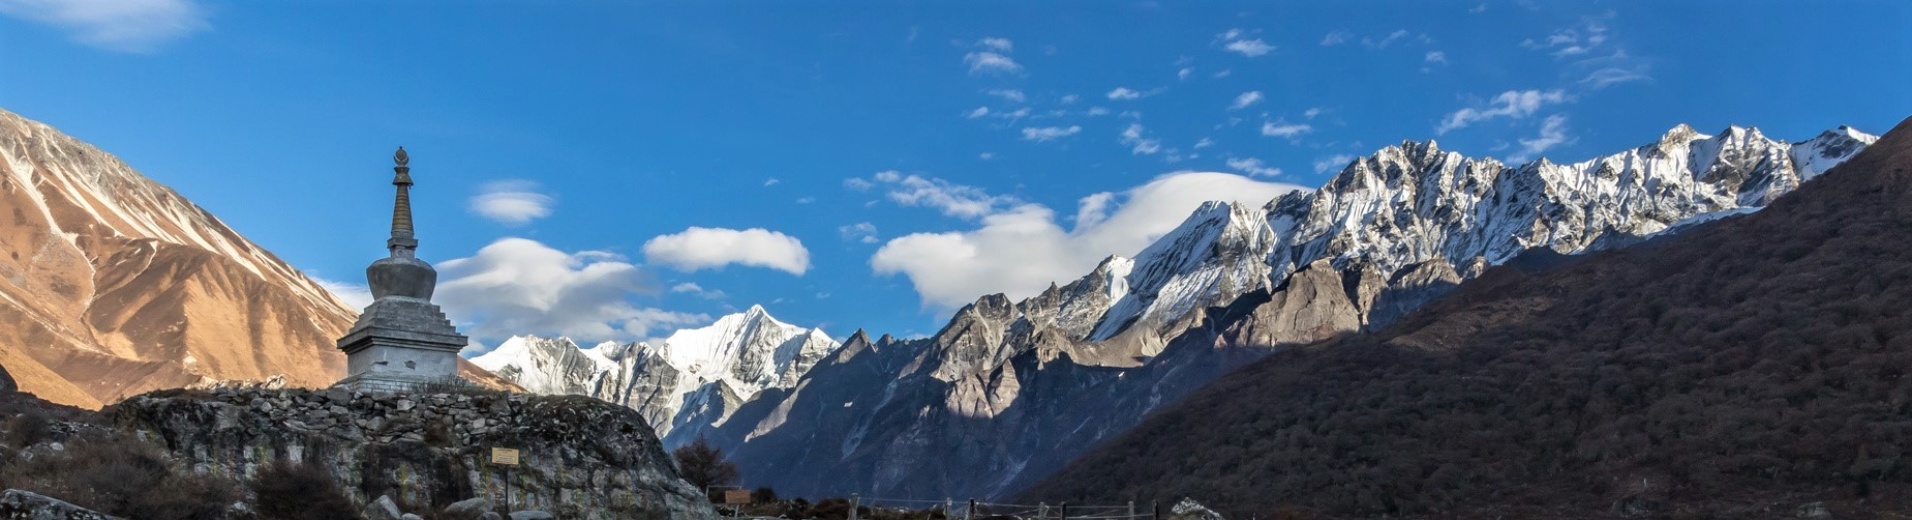 Vallée du Langtang, Népal